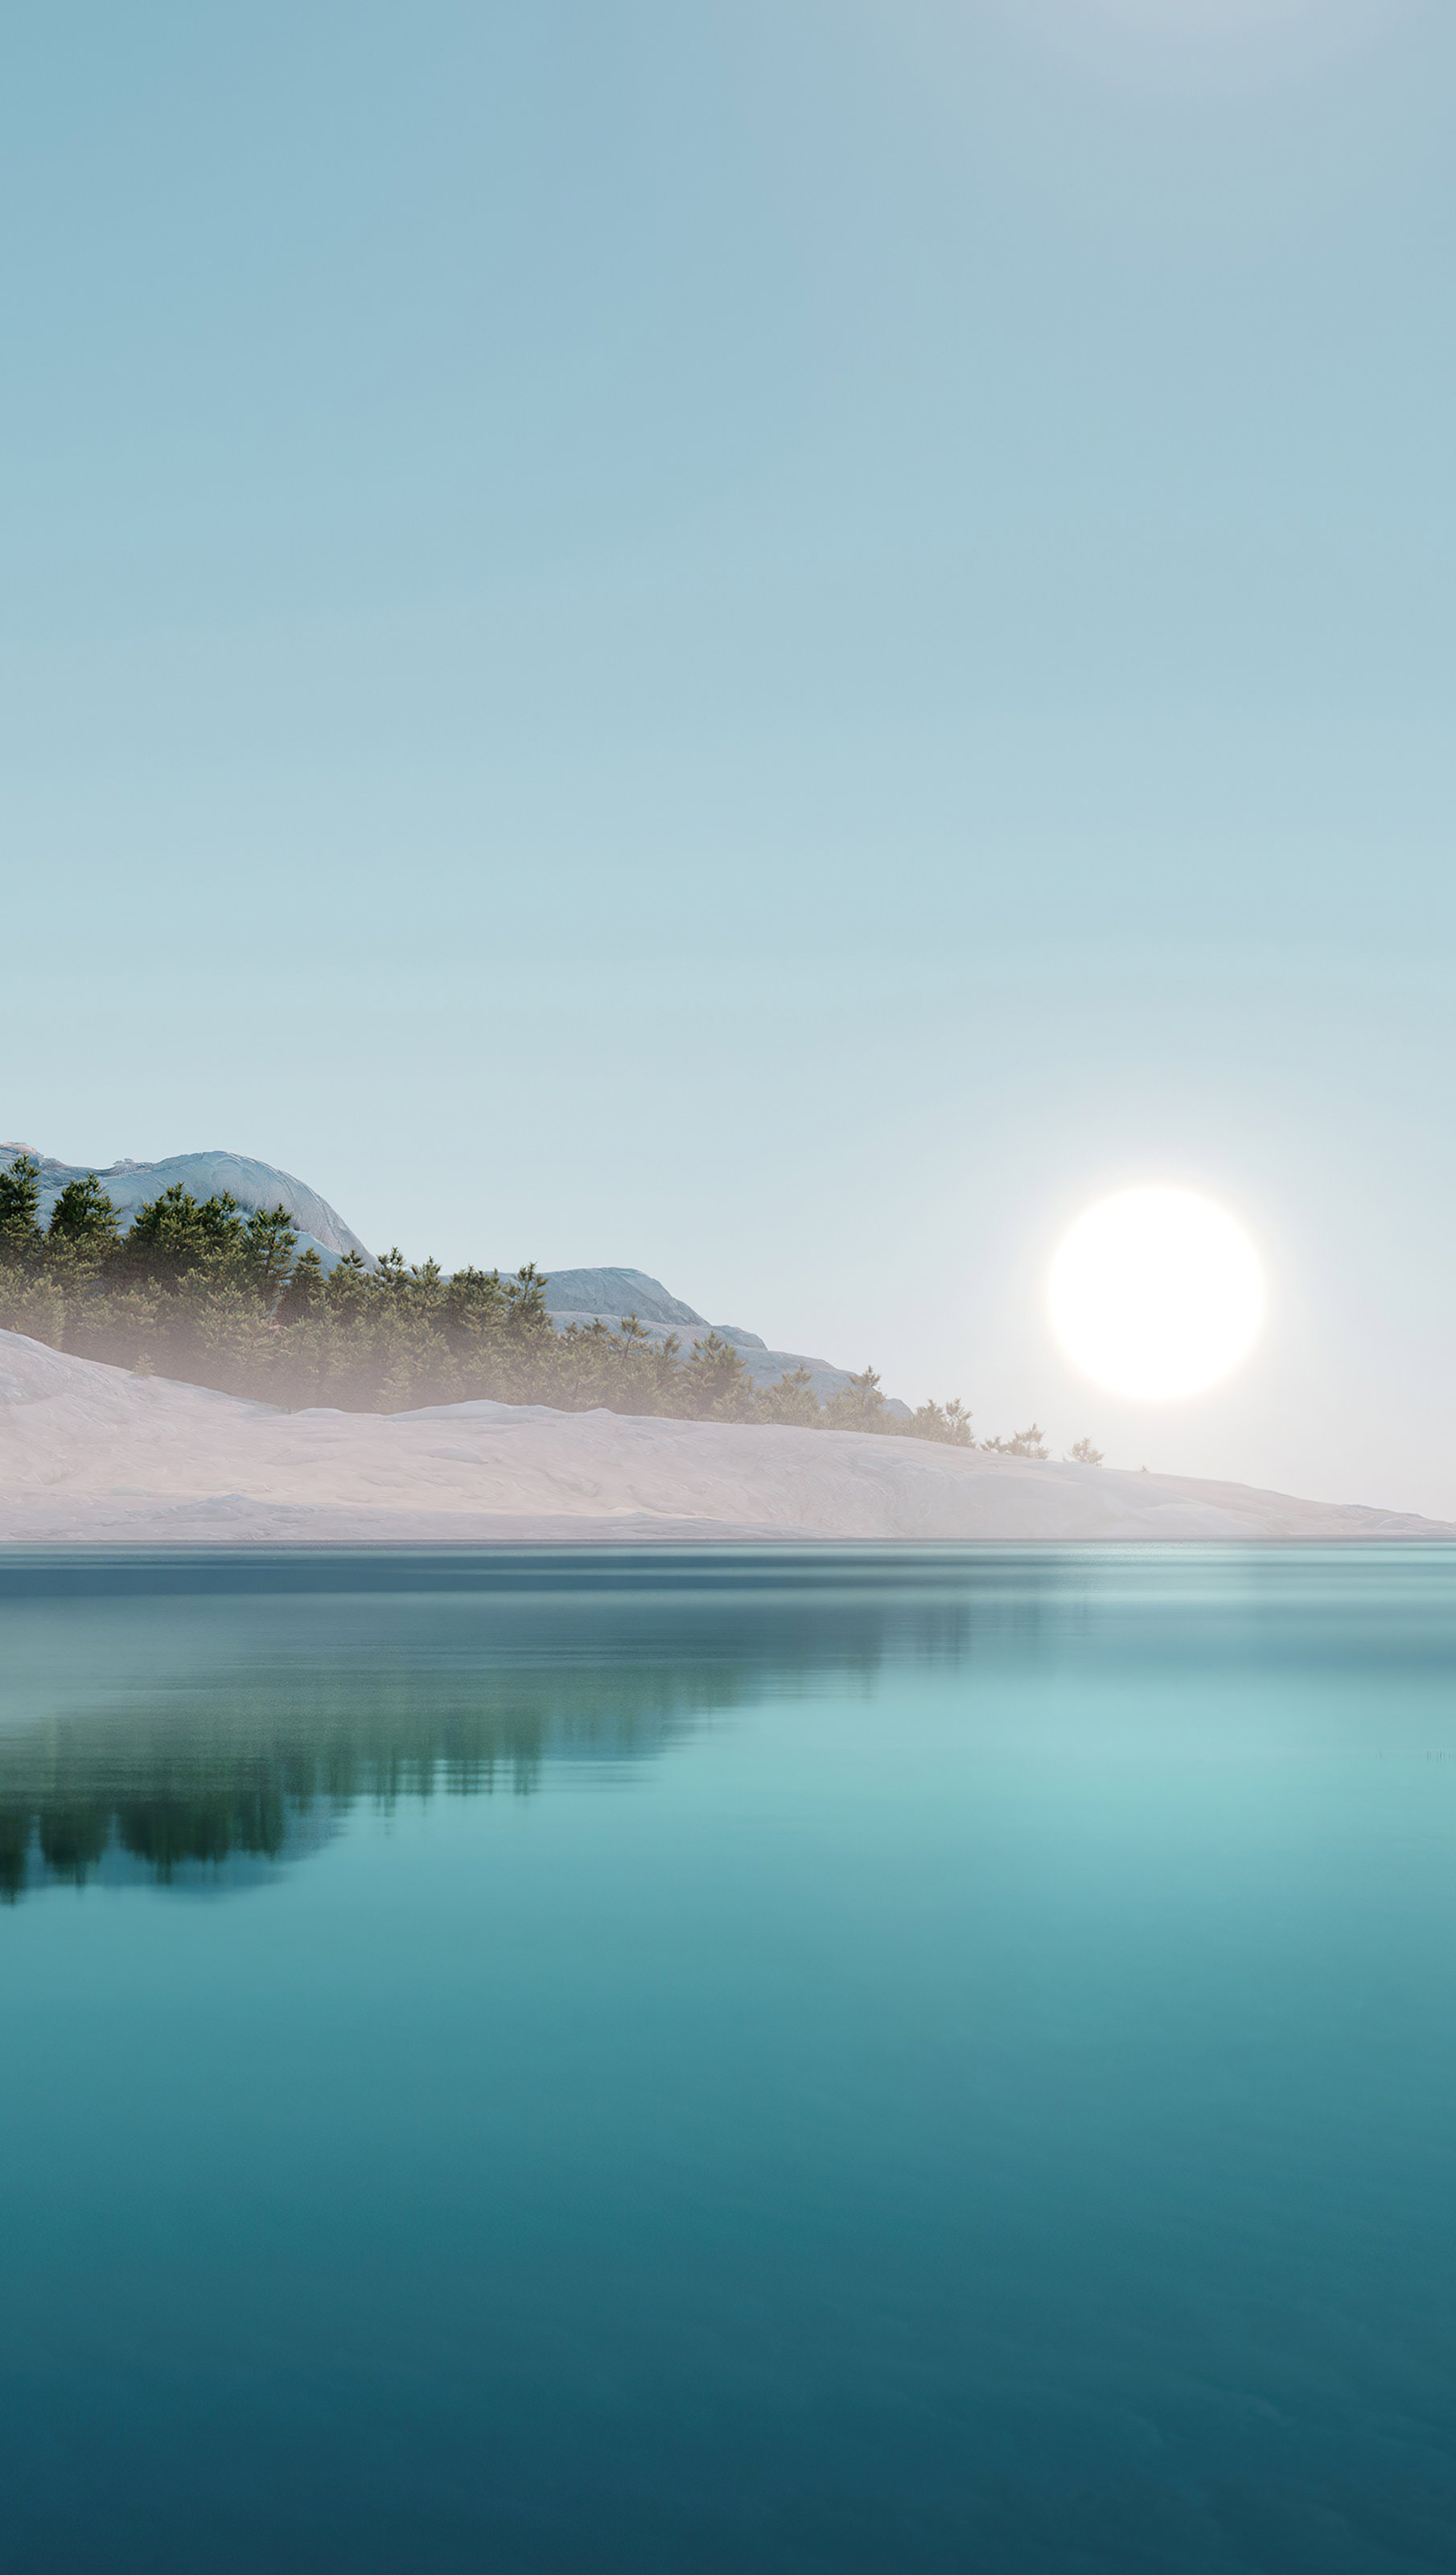 Fondos de pantalla Ilustración de amanecer frente a lago Vertical